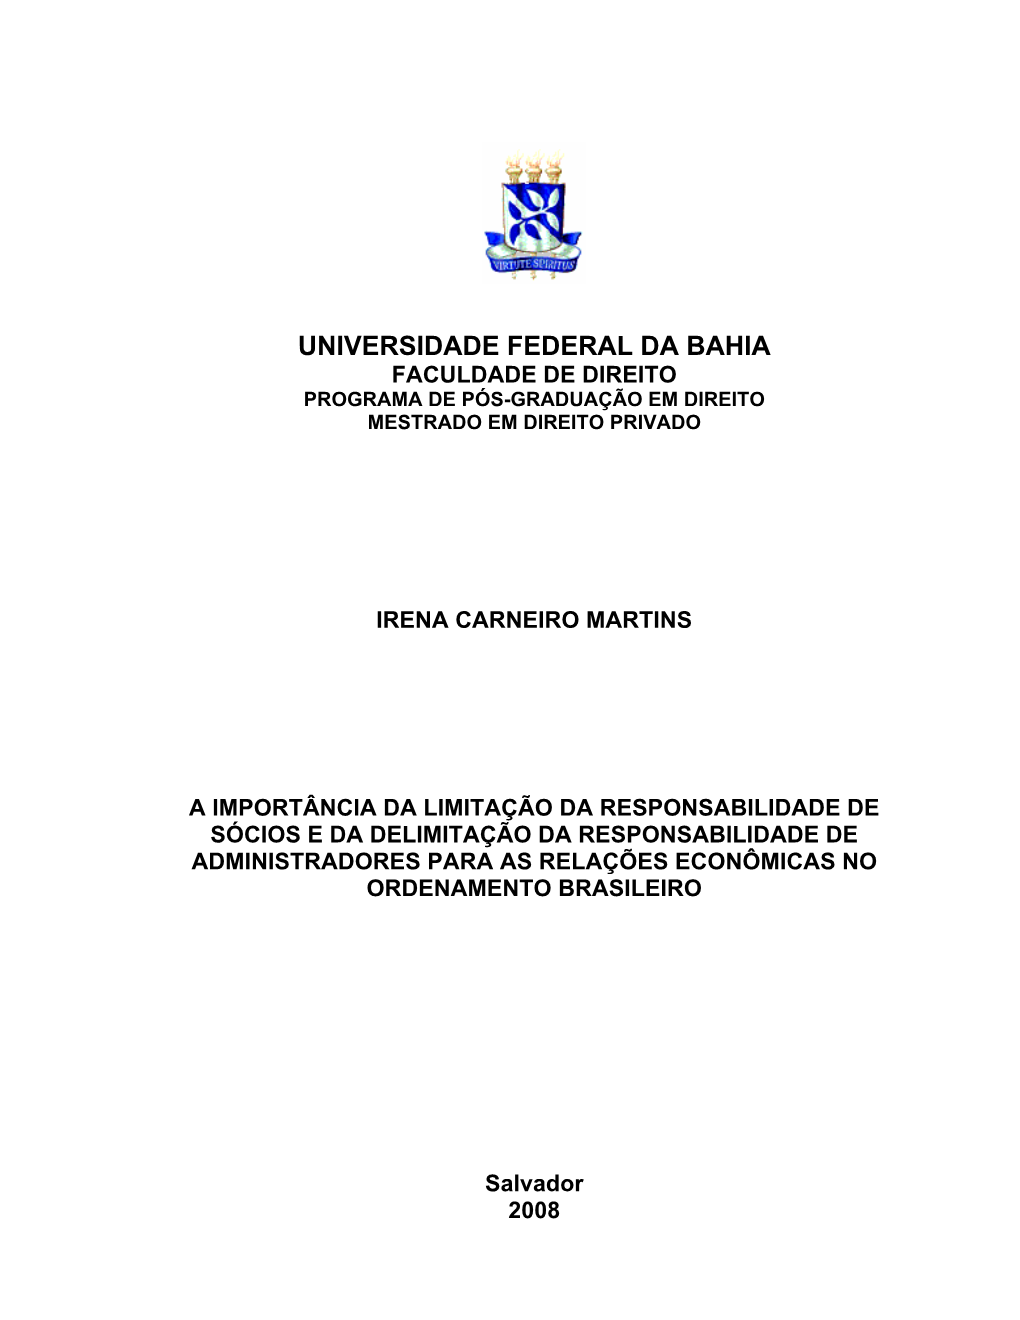 Irena Carneiro Martins.Pdf